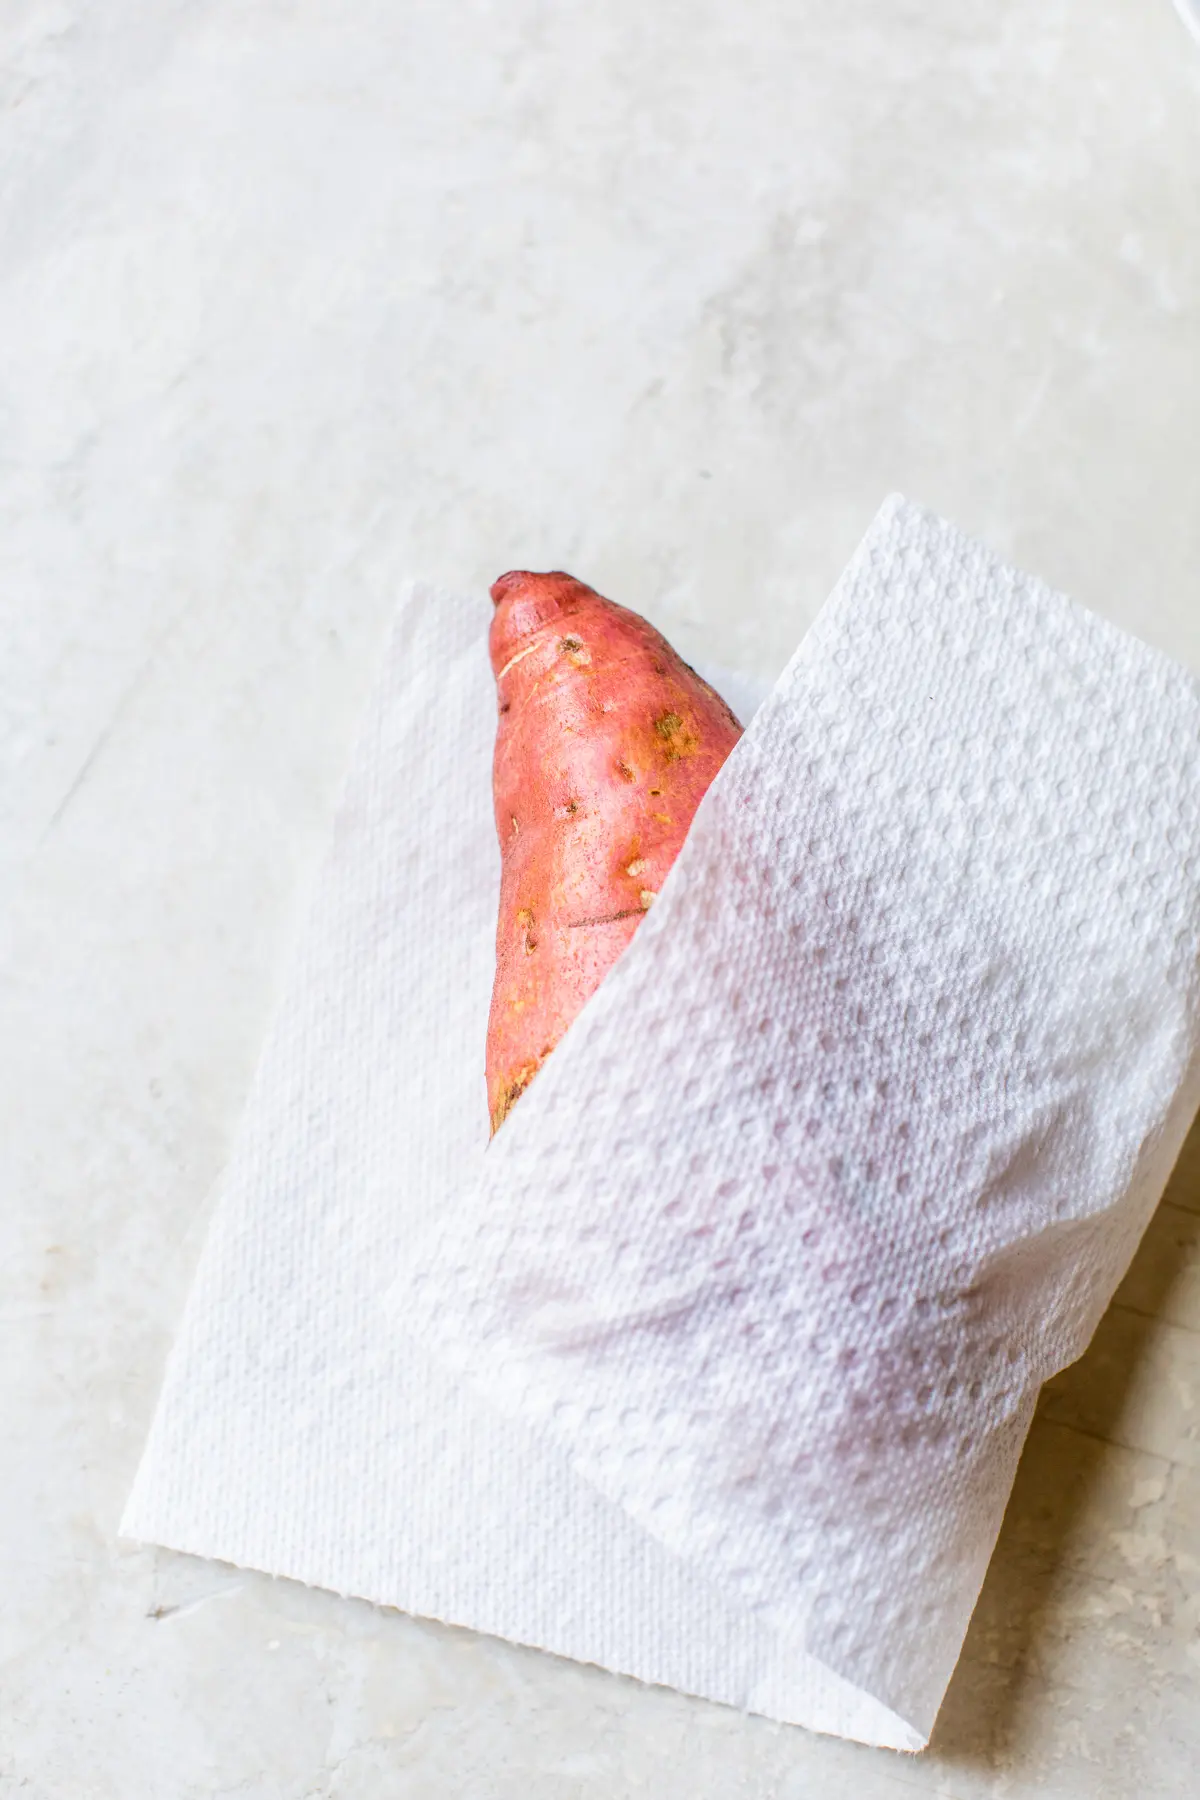 sweet potato in a paper towel